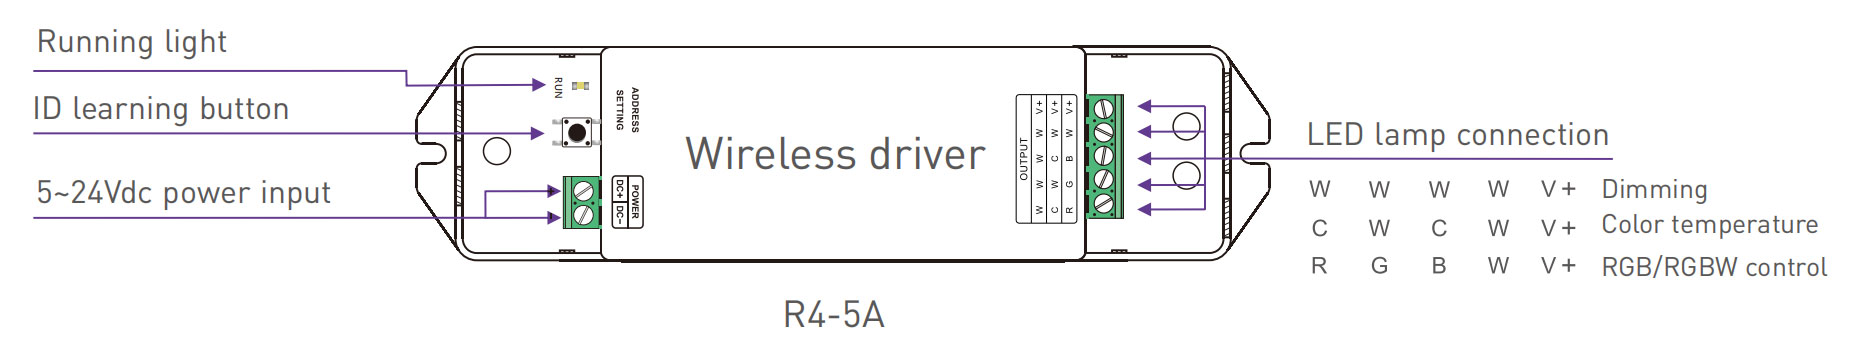 LTech Wireless receiver R4-5A